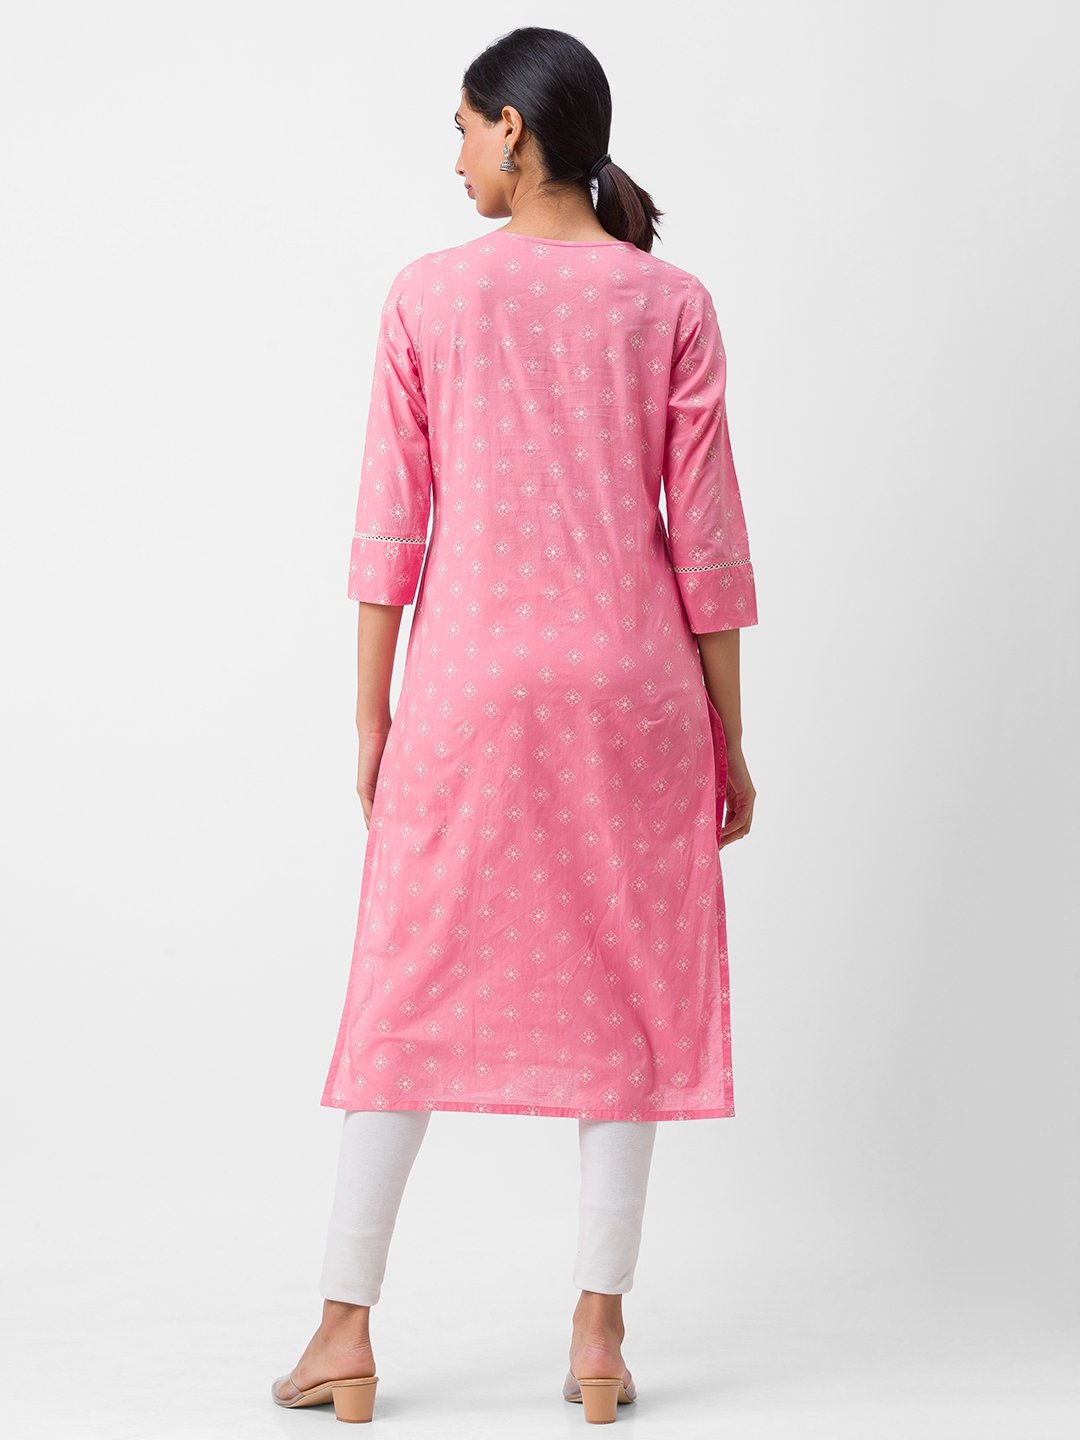 globus | Women's Pink Cotton Printed Kurtas 2